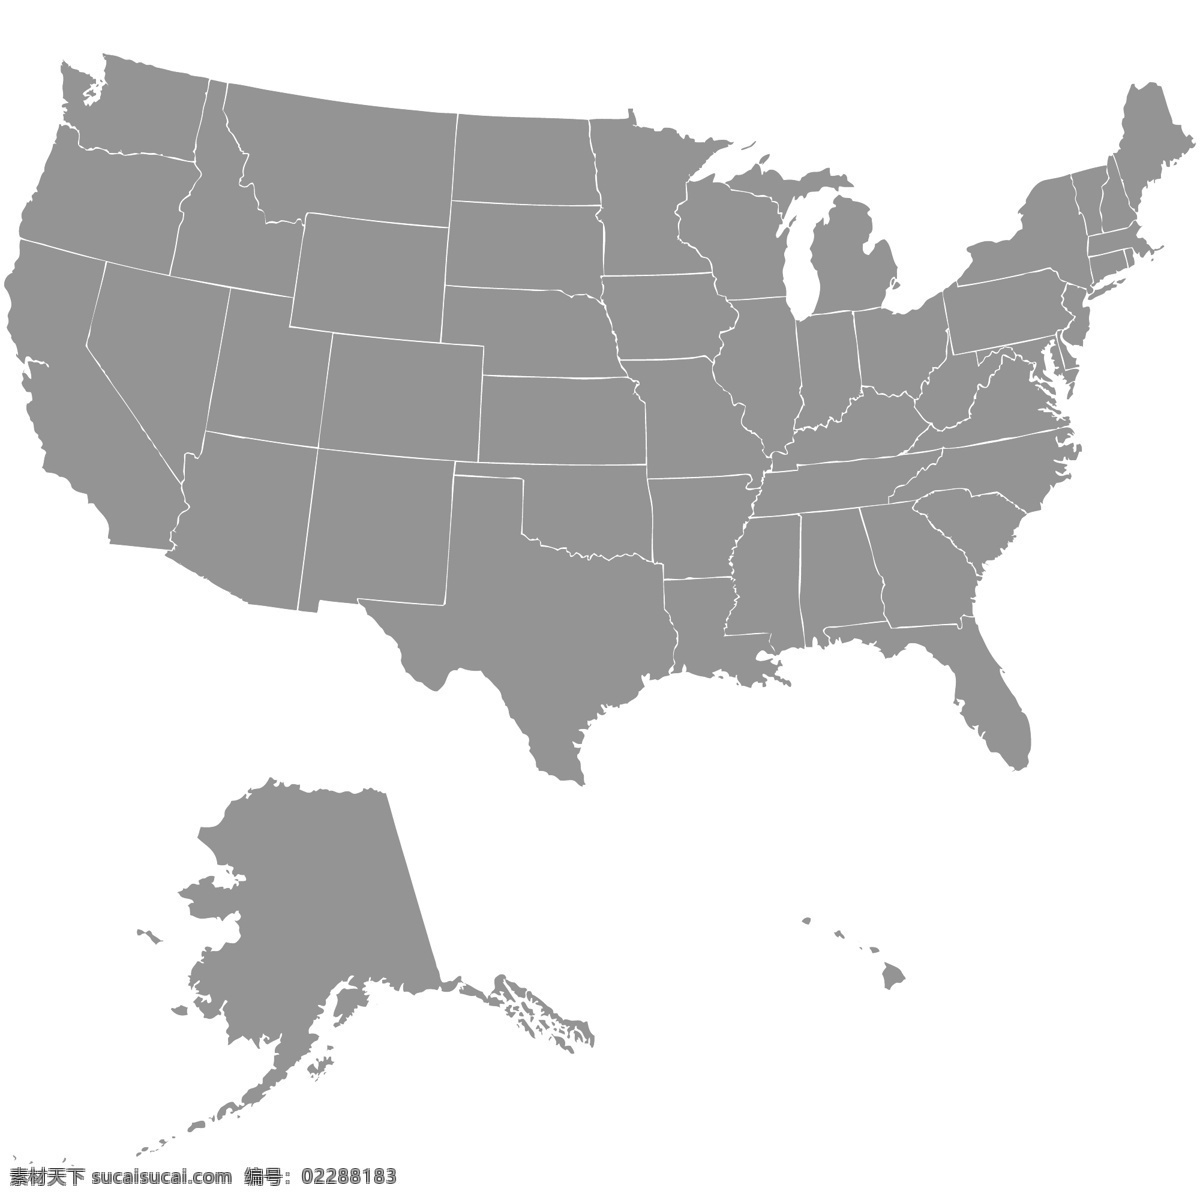 美国 地图 矢量 联合 状态 矢量图 其他矢量图